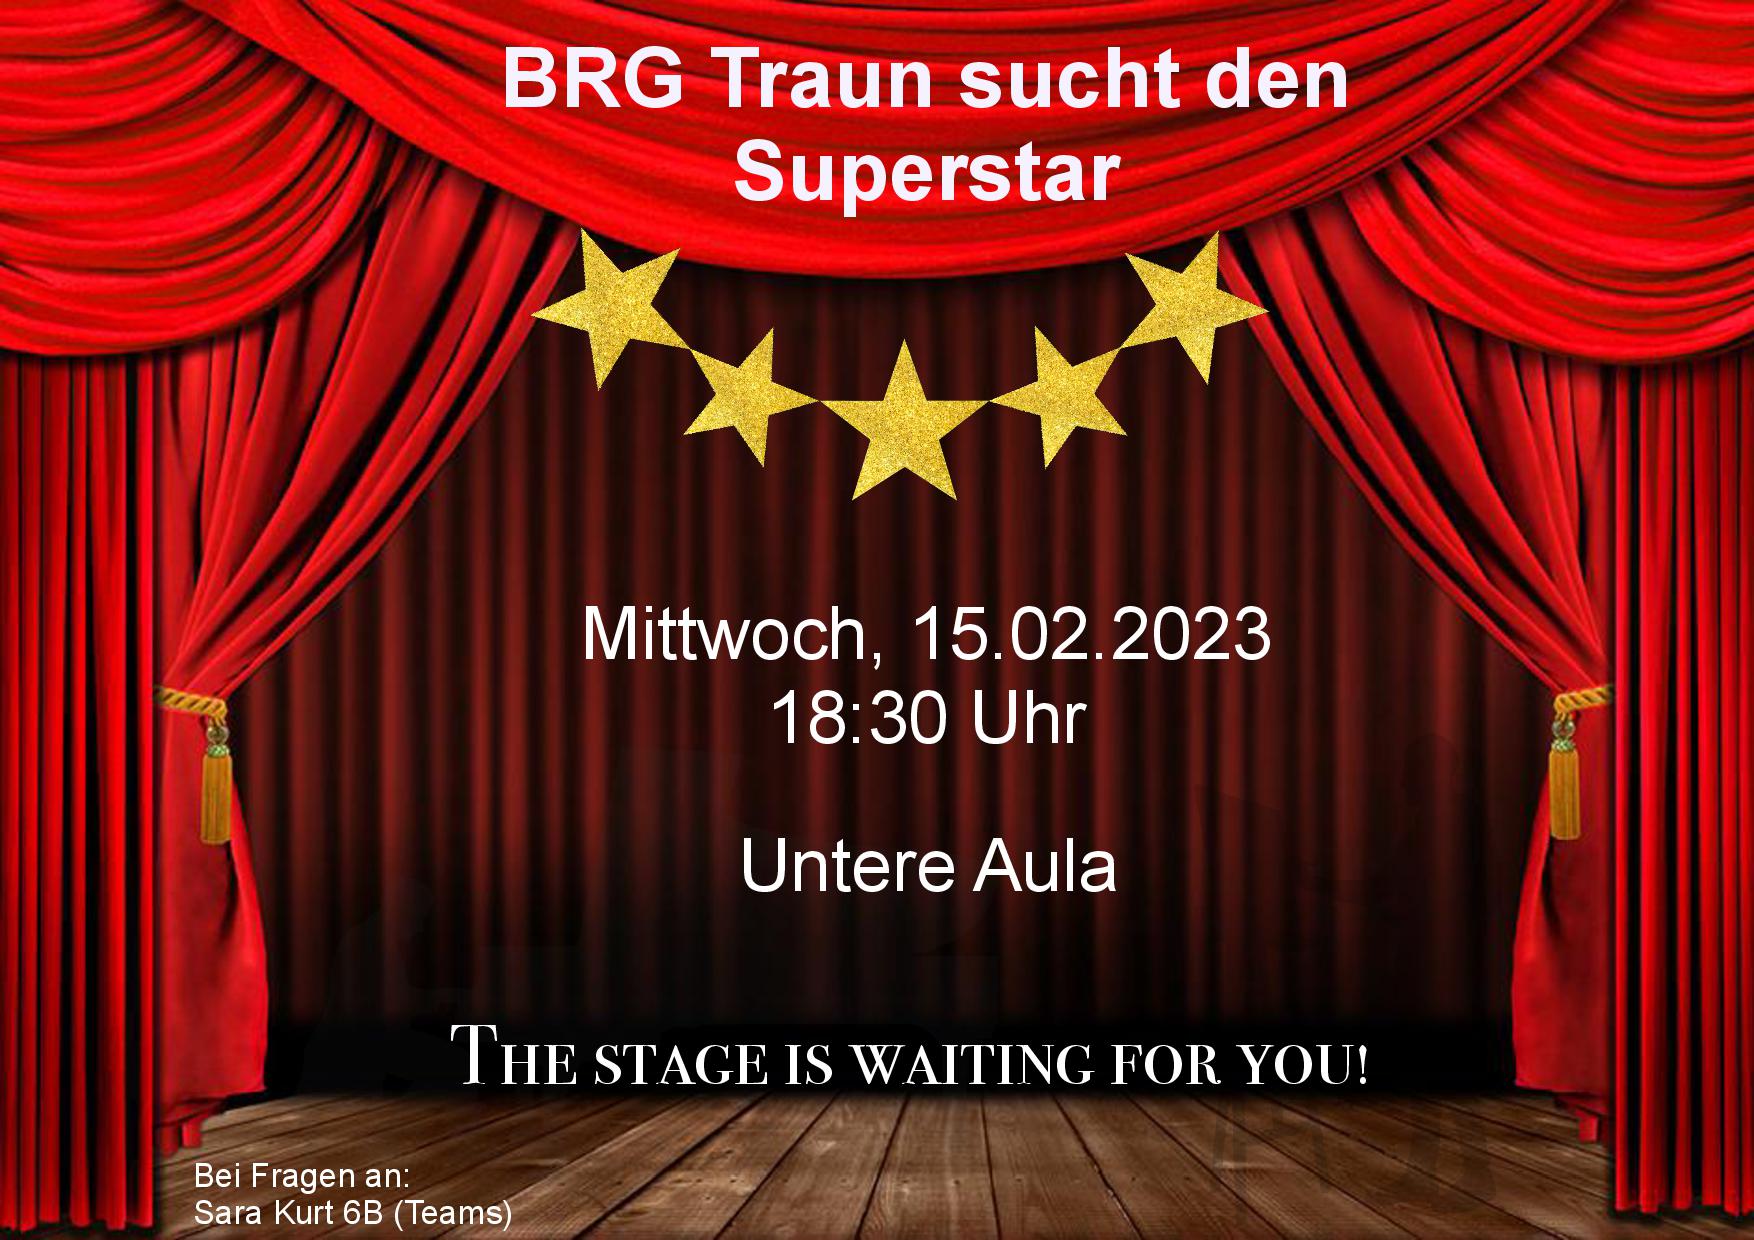 Brg_Traun_sucht_den_Superstar-min